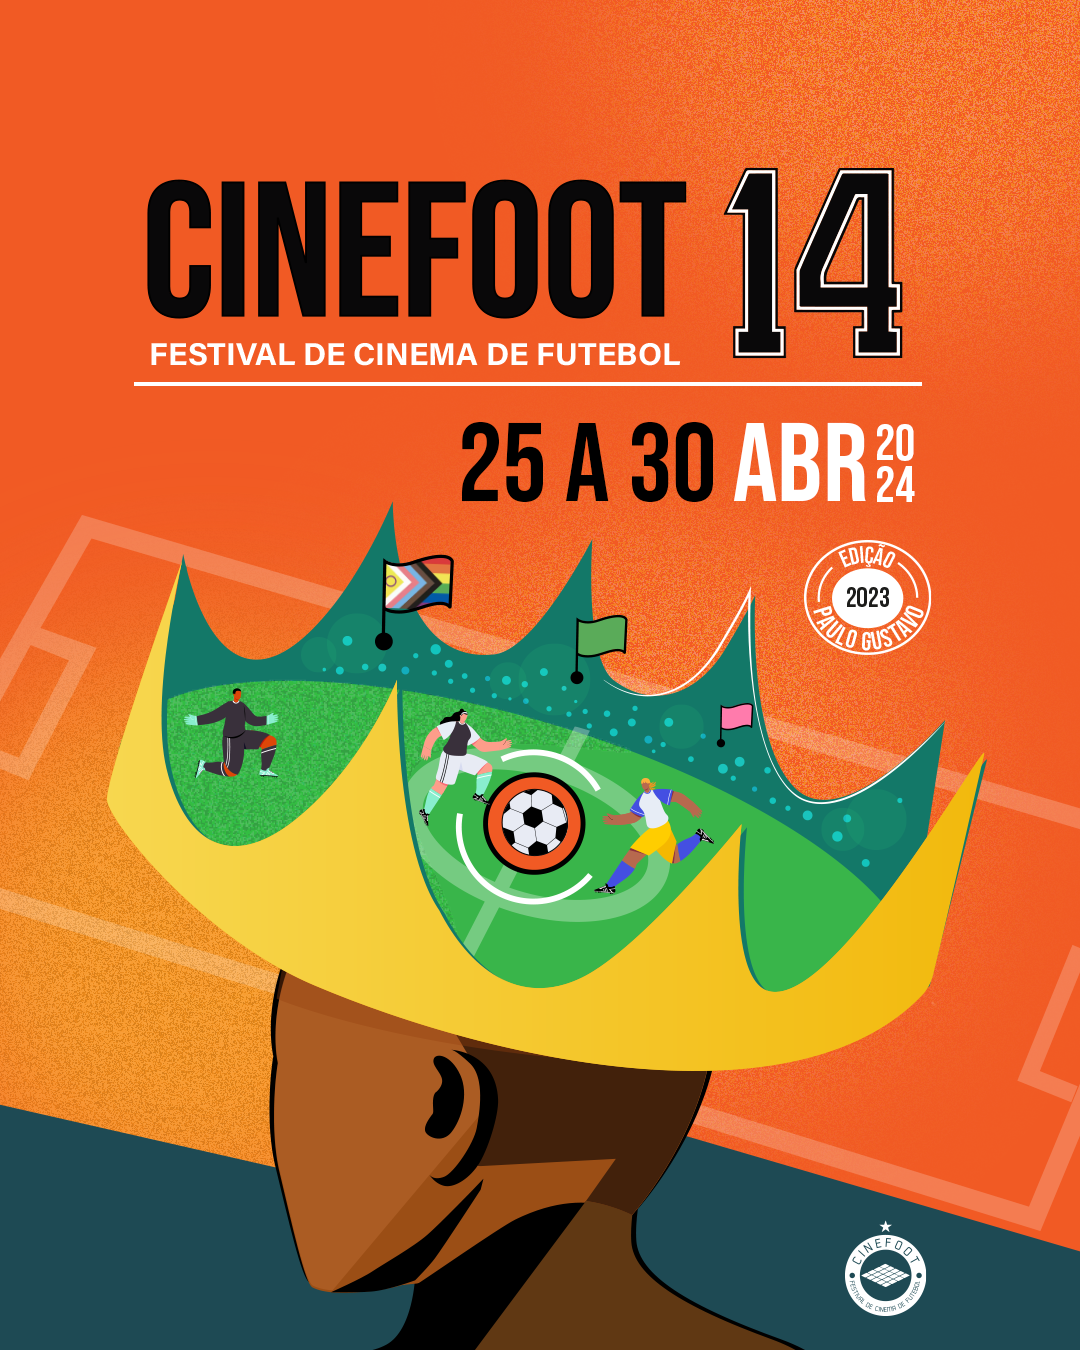 VENHA VIBRAR COM O CINEFOOT 14! O ÚNICO FESTIVAL DE CINEMA DE FUTEBOL DO BRASIL